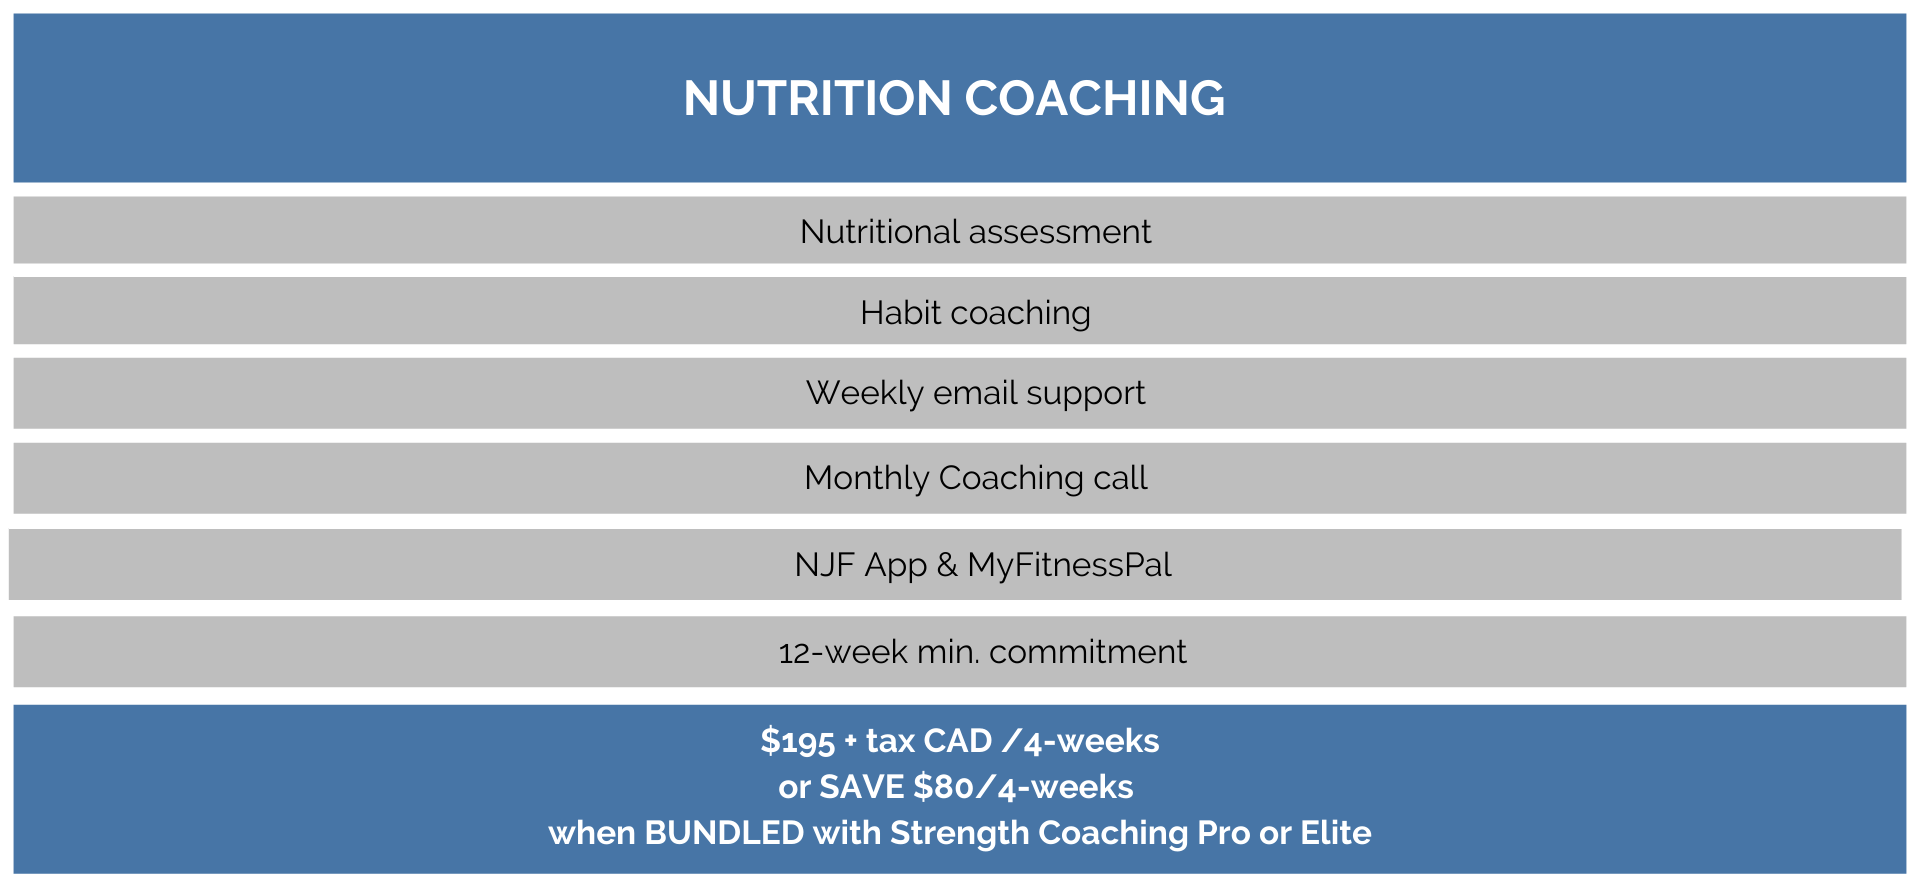 Nutrition online coaching service description